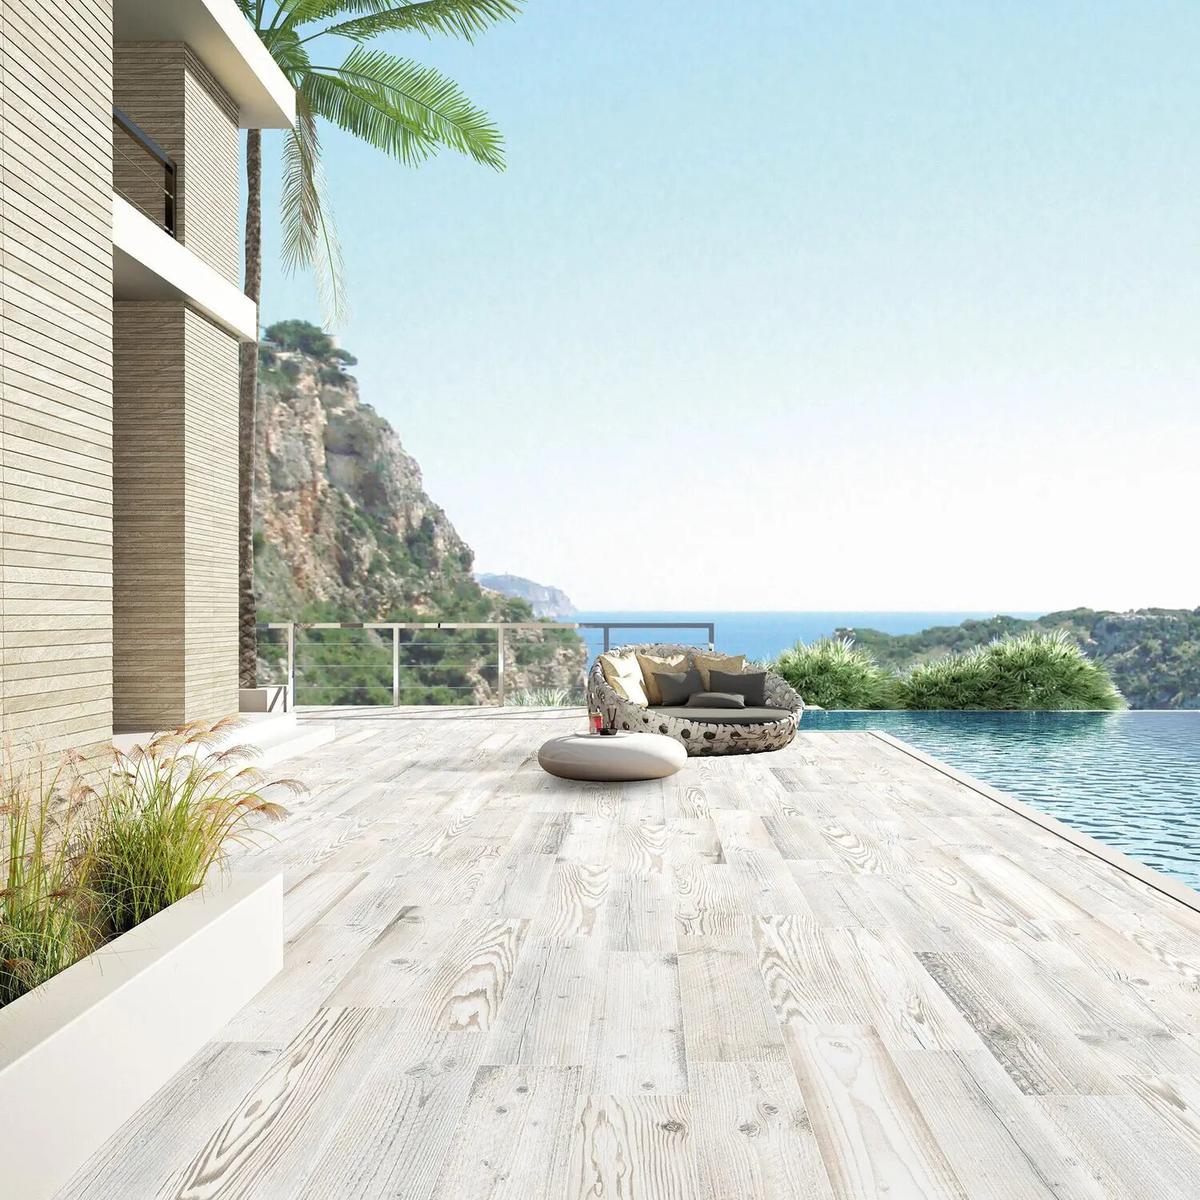 Carrelage effet bois marron clair veiné 15x90 cm sur une terrasse extérieure beige avec piscine et vue sur mer